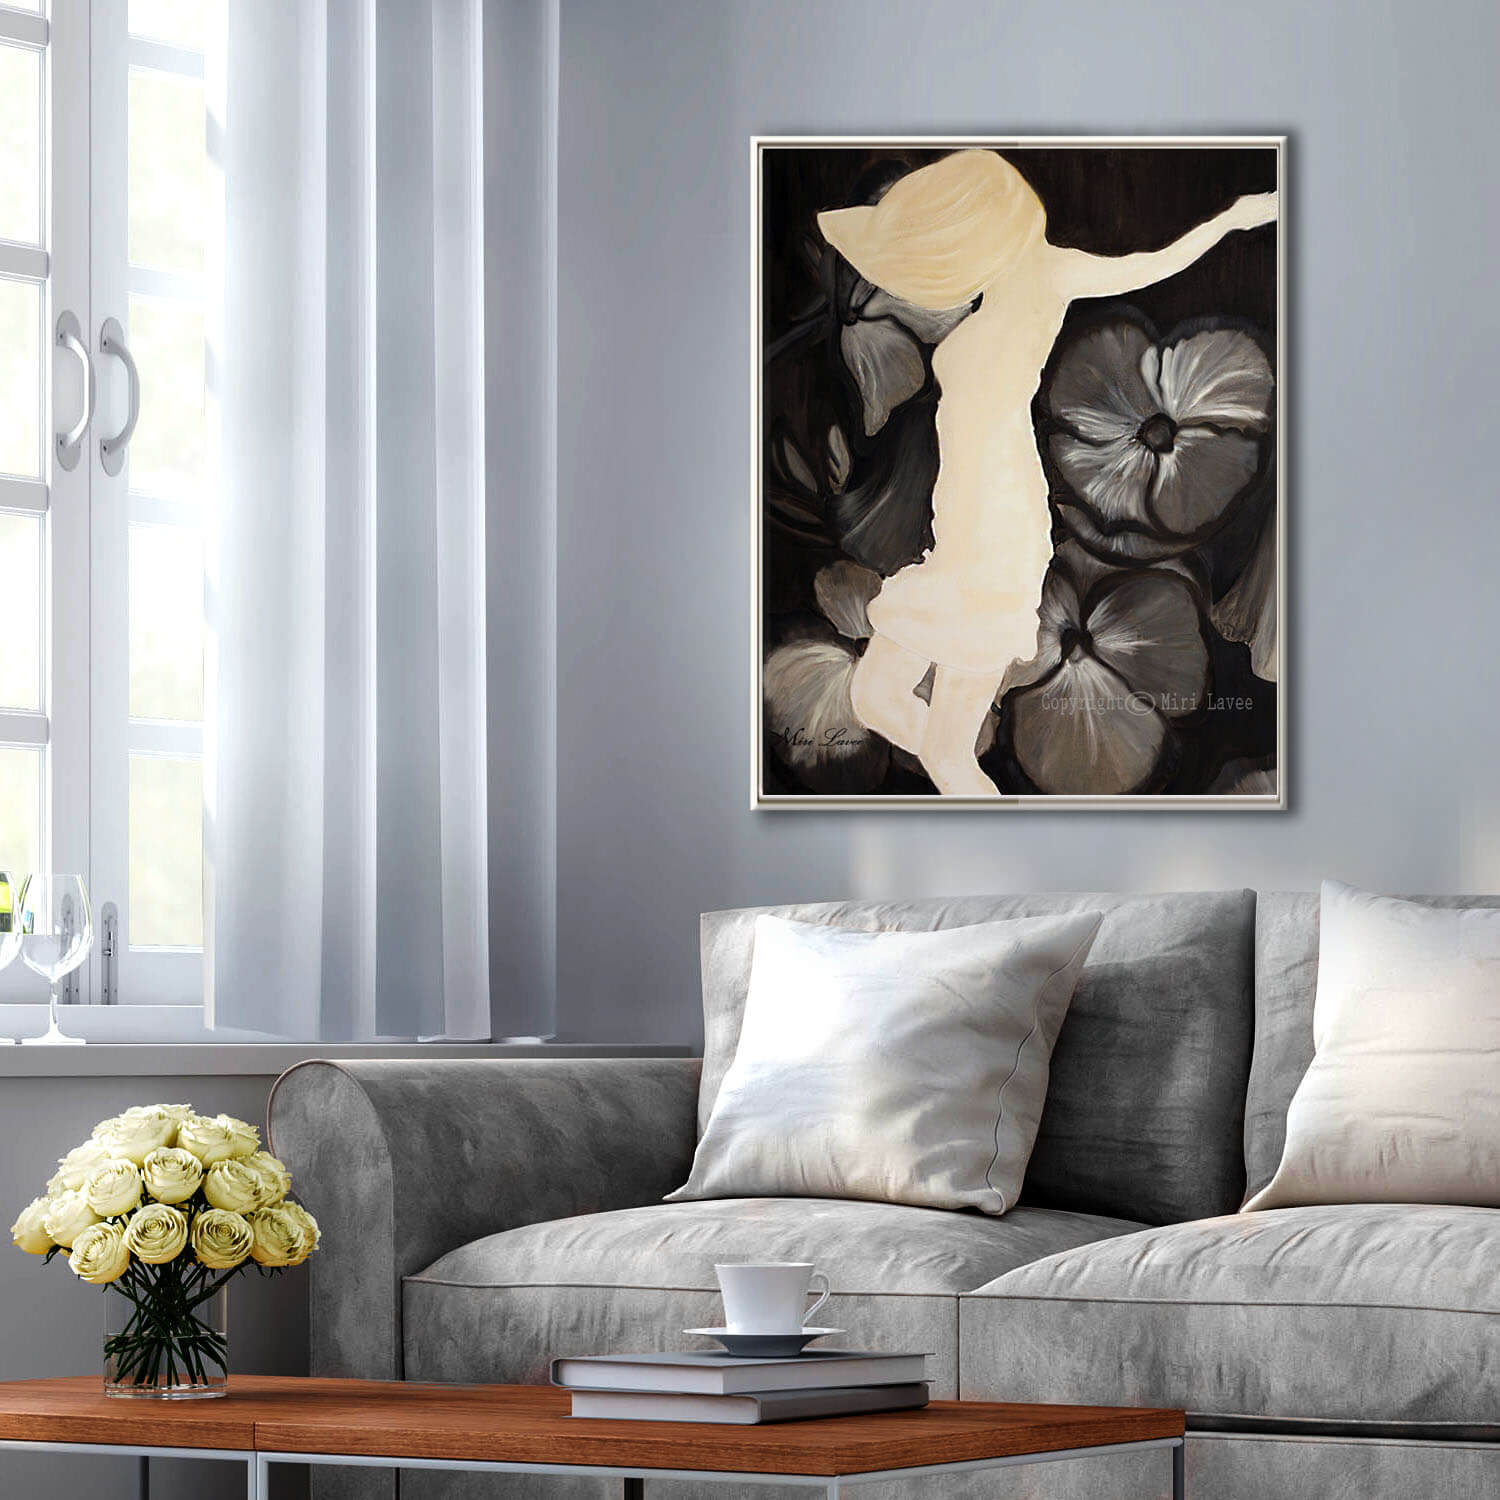 ציור רוקדת בין פרחים תמונה גדולה בשחור לבן מעל הספה בסלון אינטימי מעוצב ציירת מירי לביא